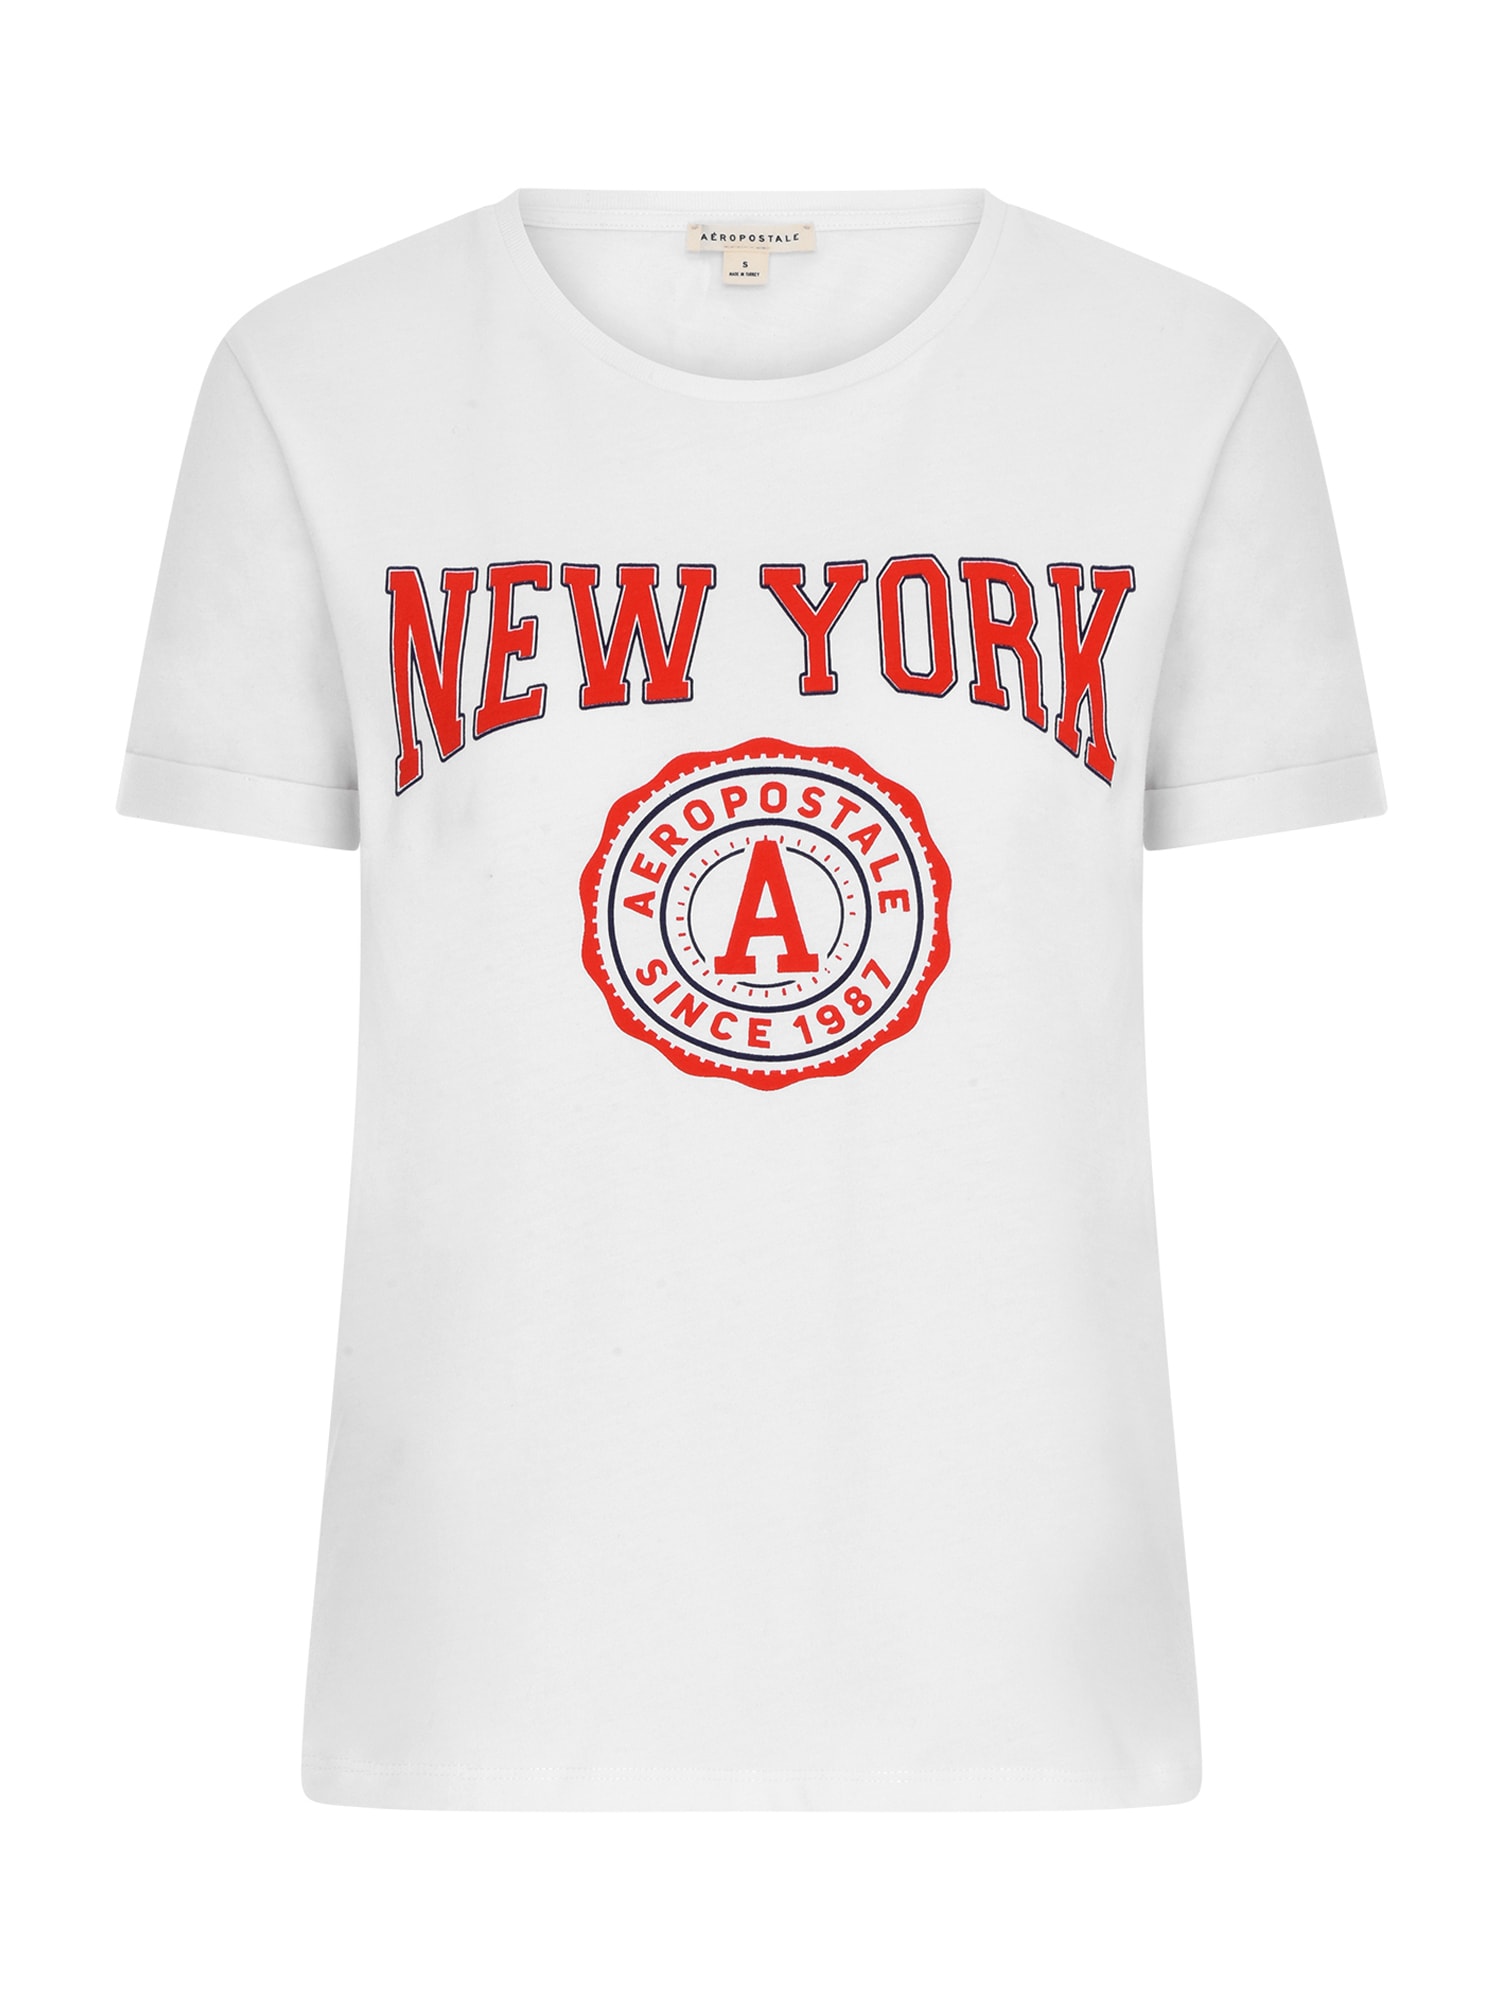 AÉROPOSTALE Marškinėliai 'New York' balta / ugnies raudona / juoda